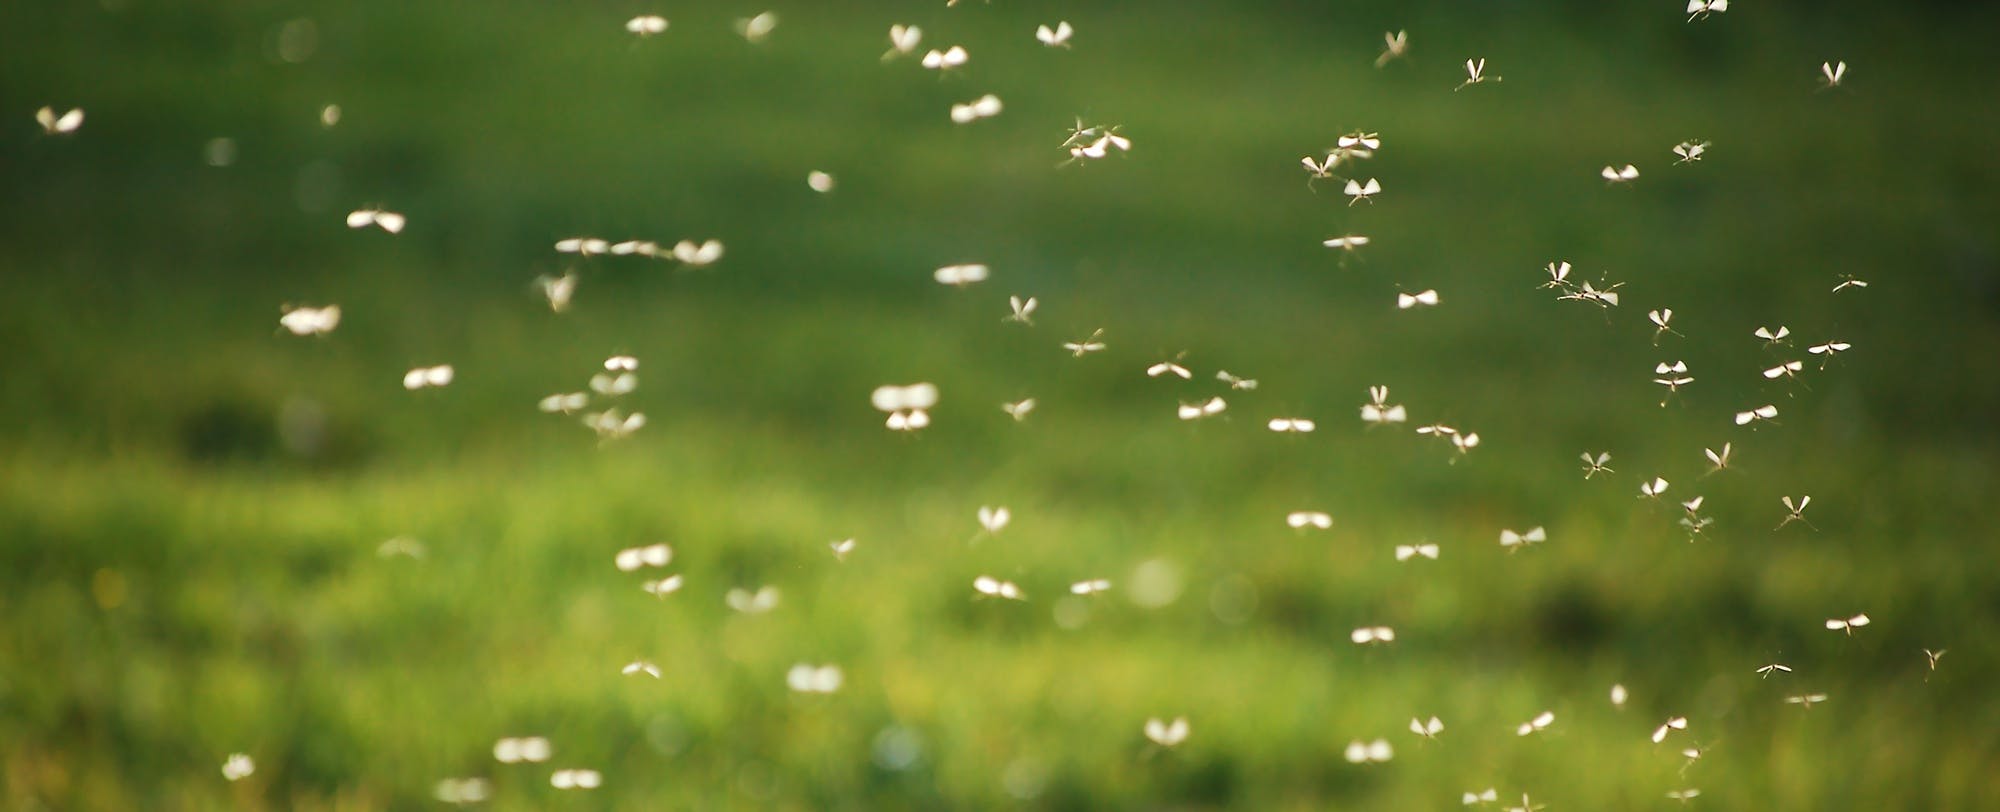 5 Natural Ways to Keep Bugs at Bay